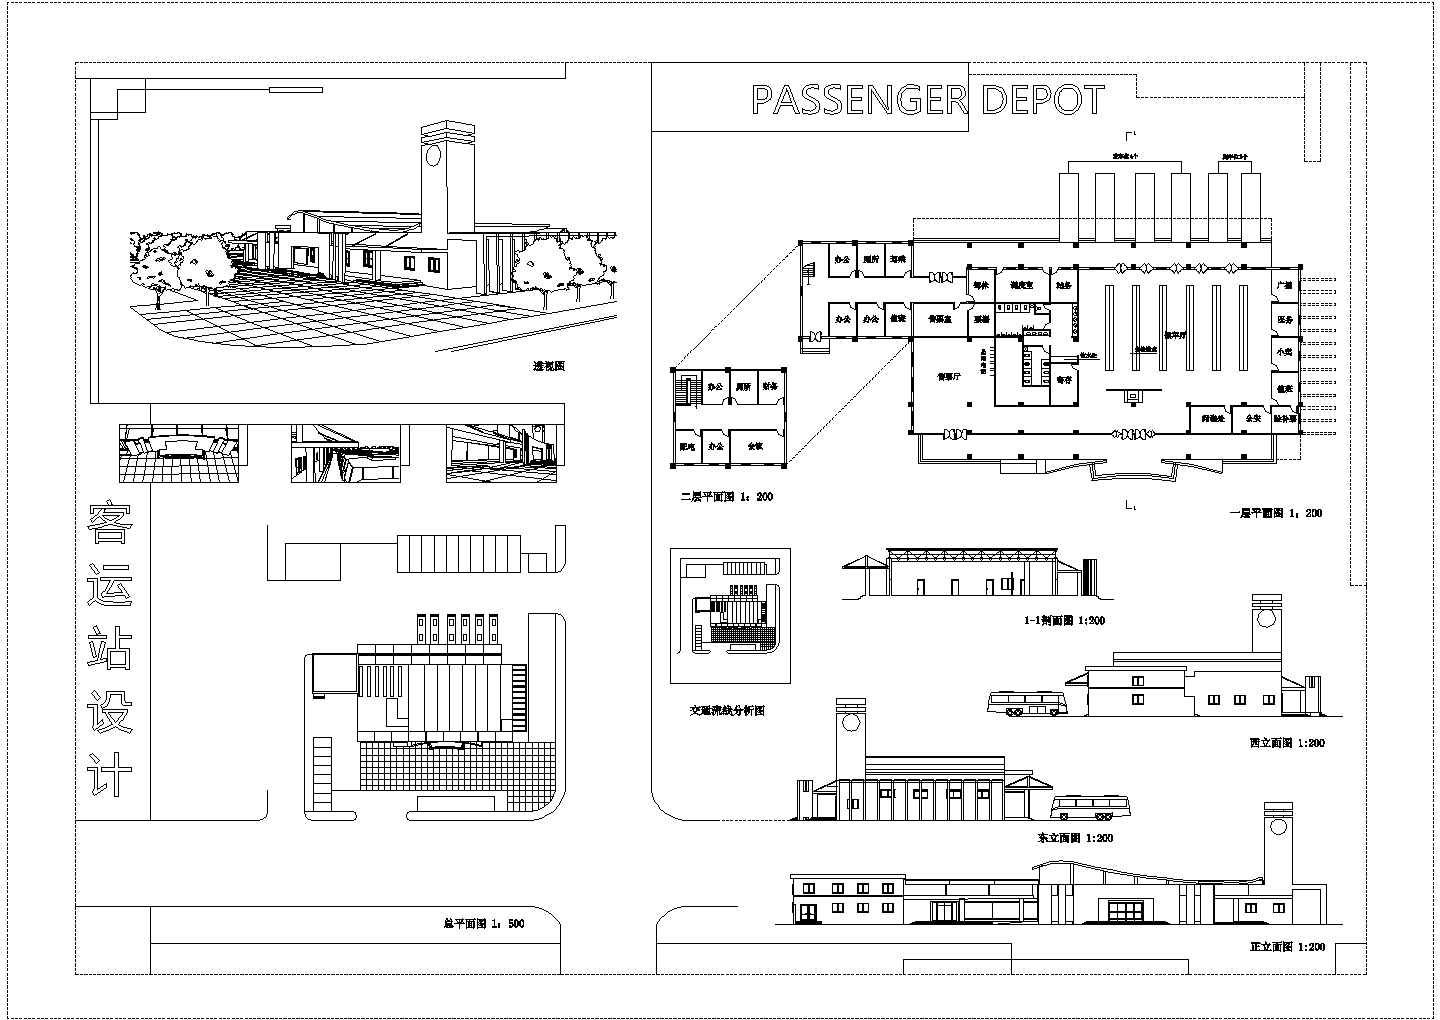 二层长途汽车客运站全套建筑设计图